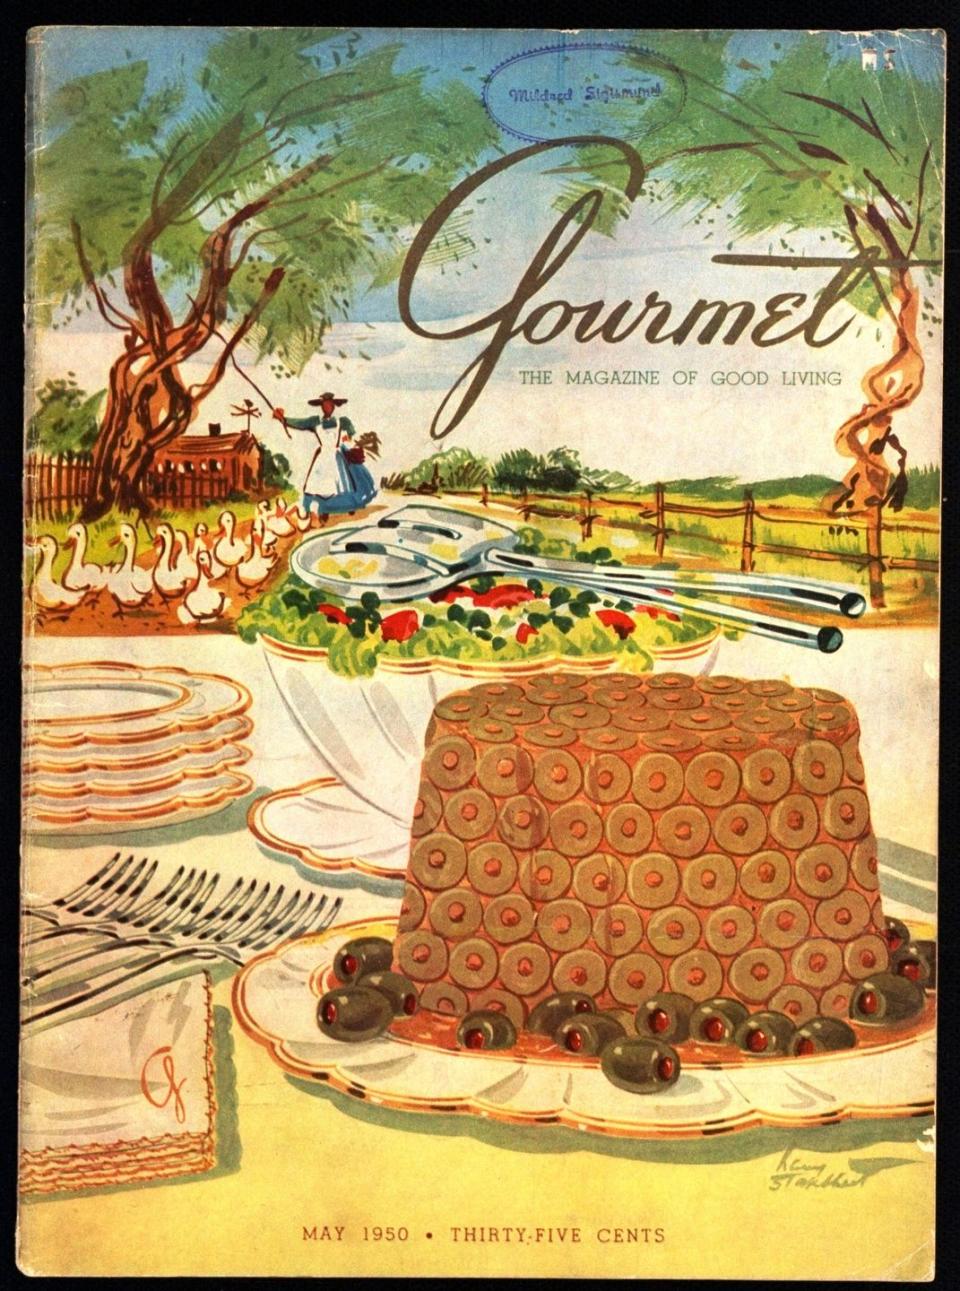 1949: When in doubt, add fruit.